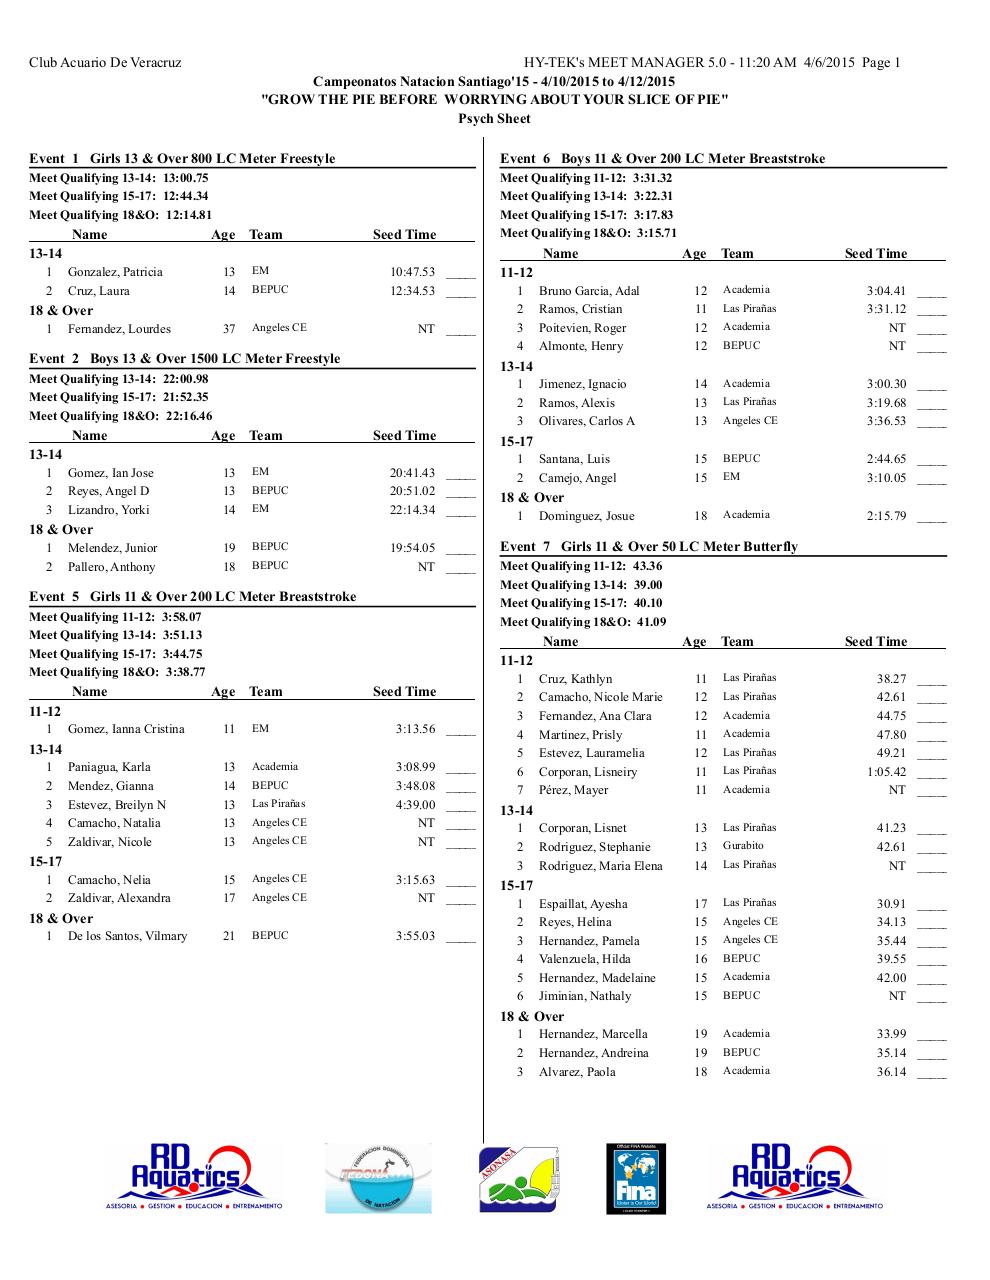 psych sheet - campeonatos natacion santiago 2015.pdf - page 1/14